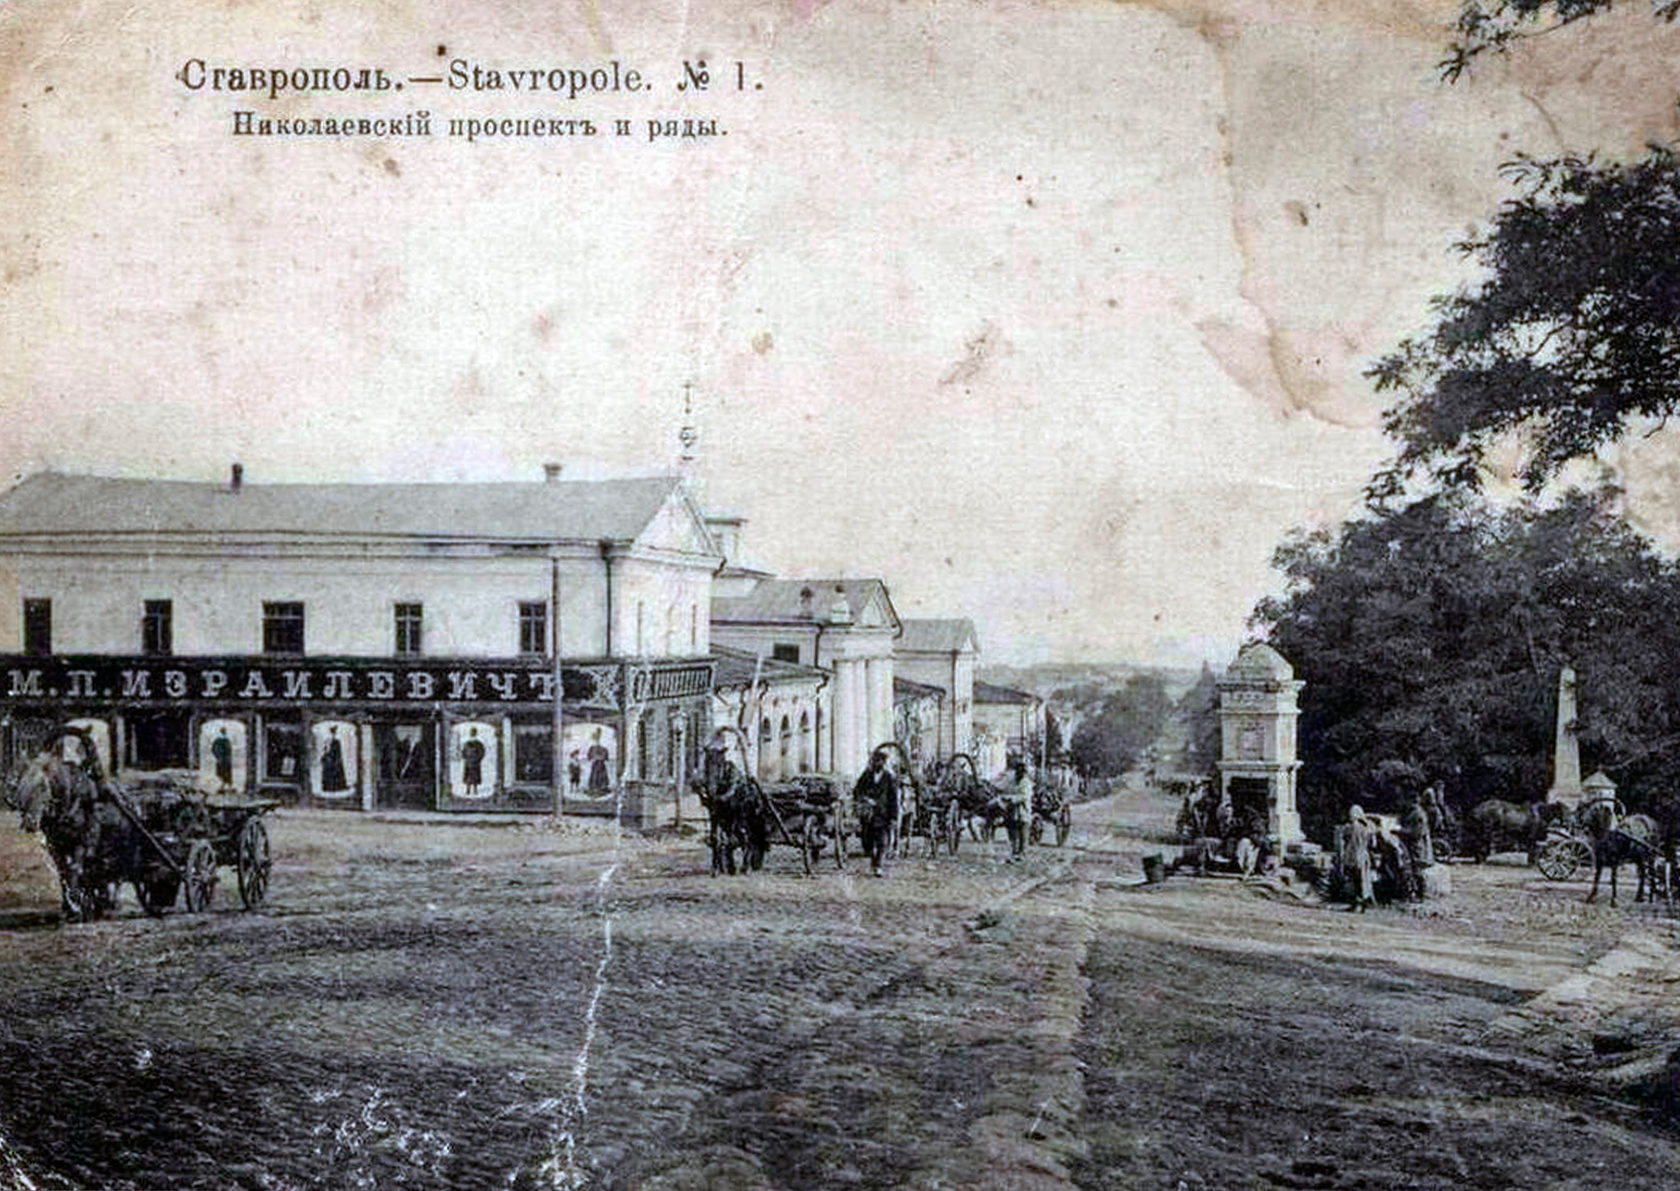 фото старая почтовая ретро открытка дореволюционного времени с изображением Николаевского проспекта города Ставрополя